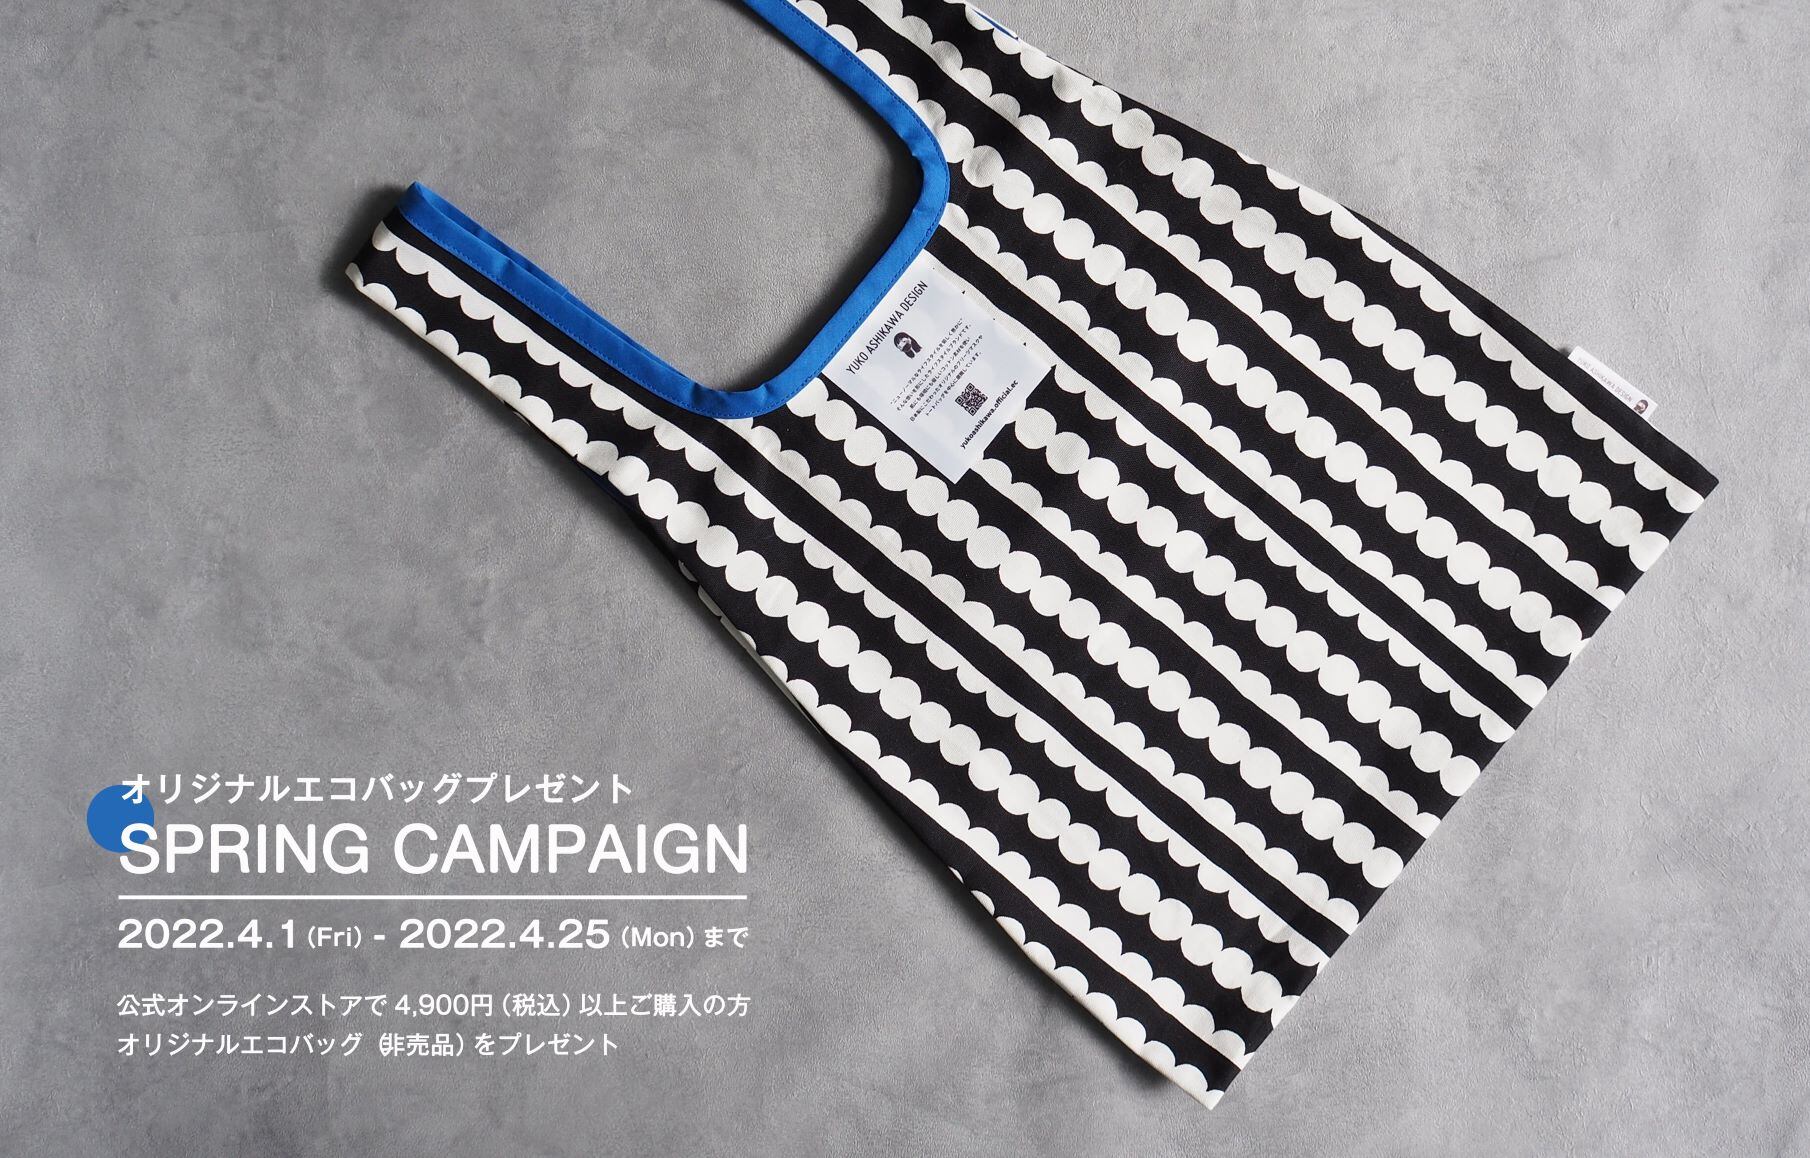 オリジナル特製エコバッグ プレゼントキャンペーン開催 | yuko ashikawa design